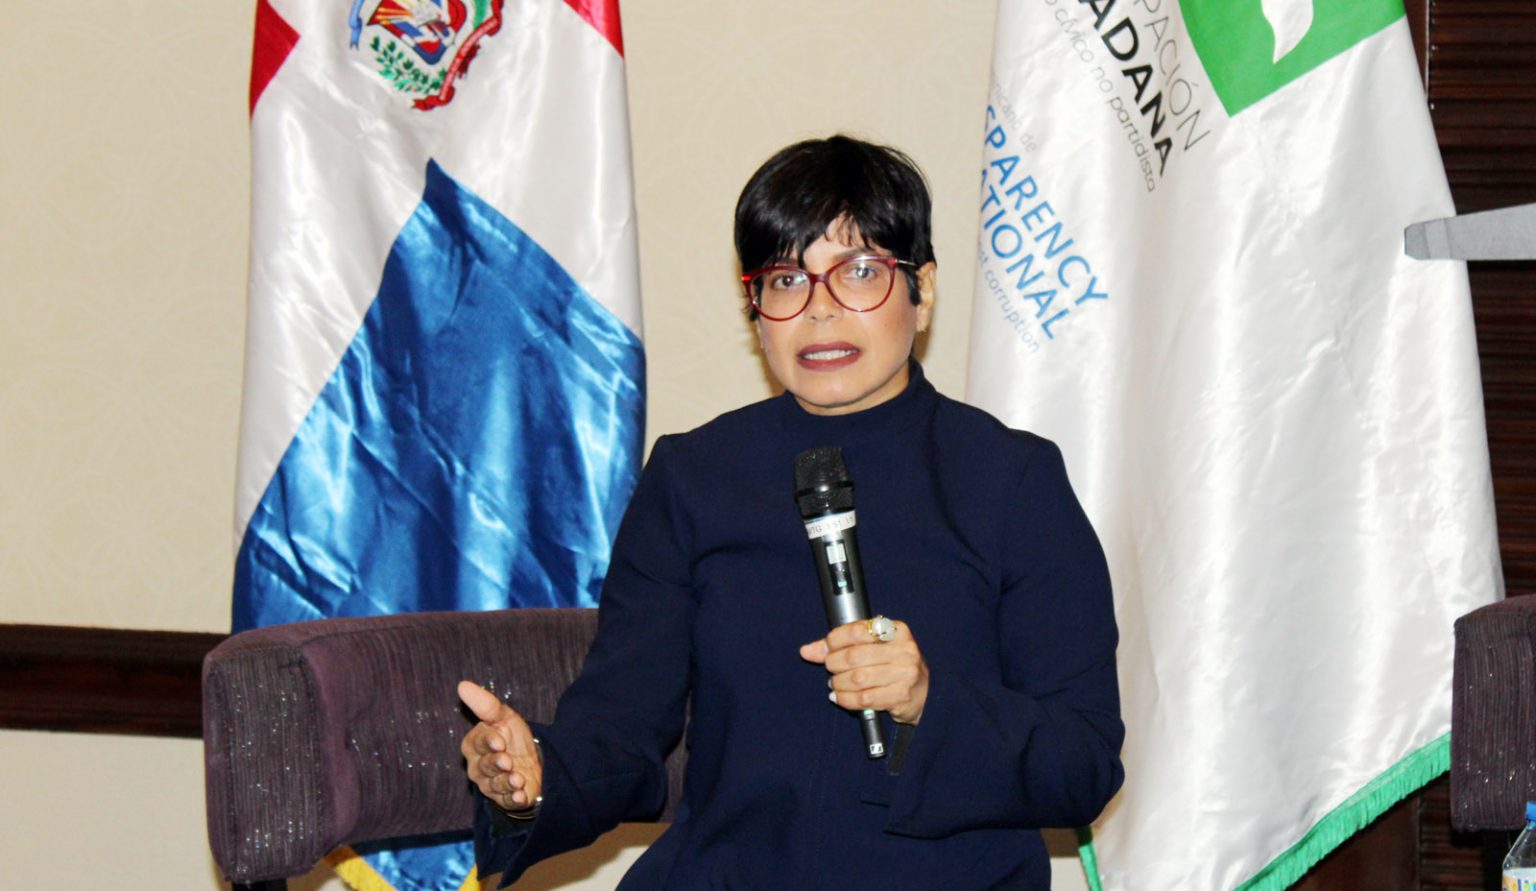 Patricia Santana Nina